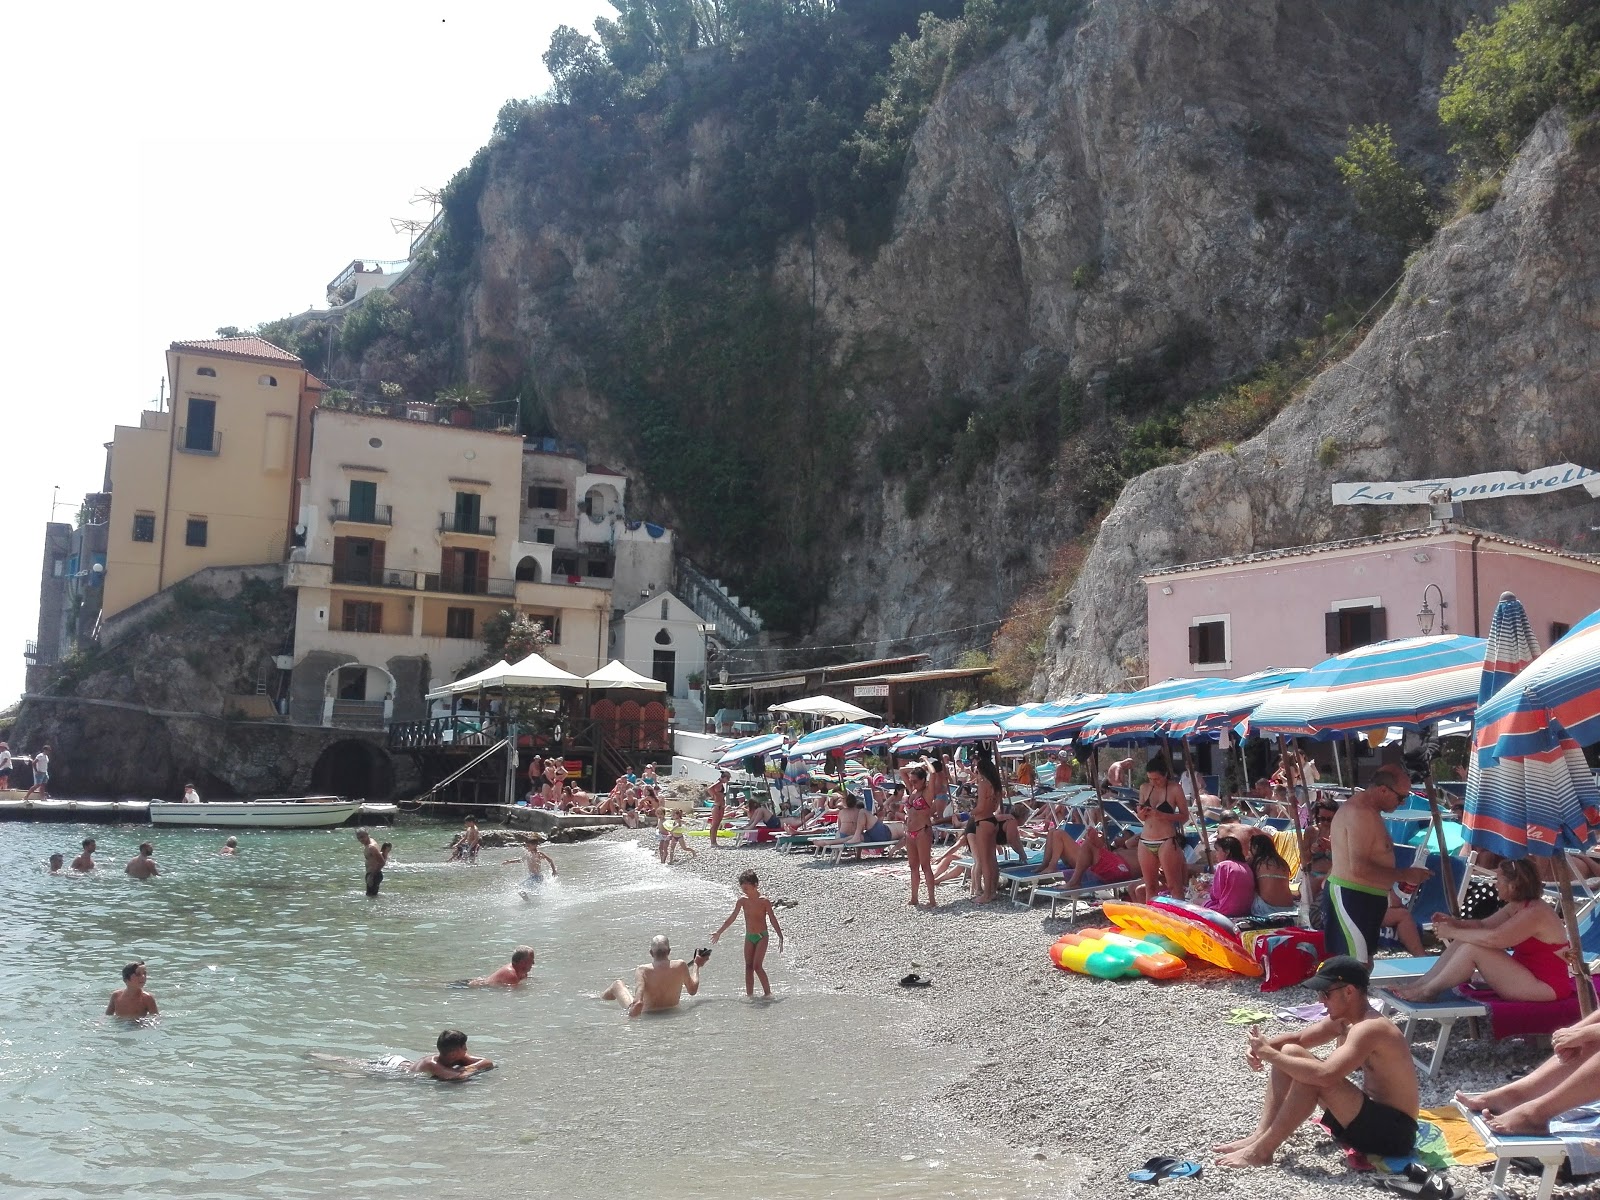 Photo of Spiaggia di via Smeraldo located in natural area